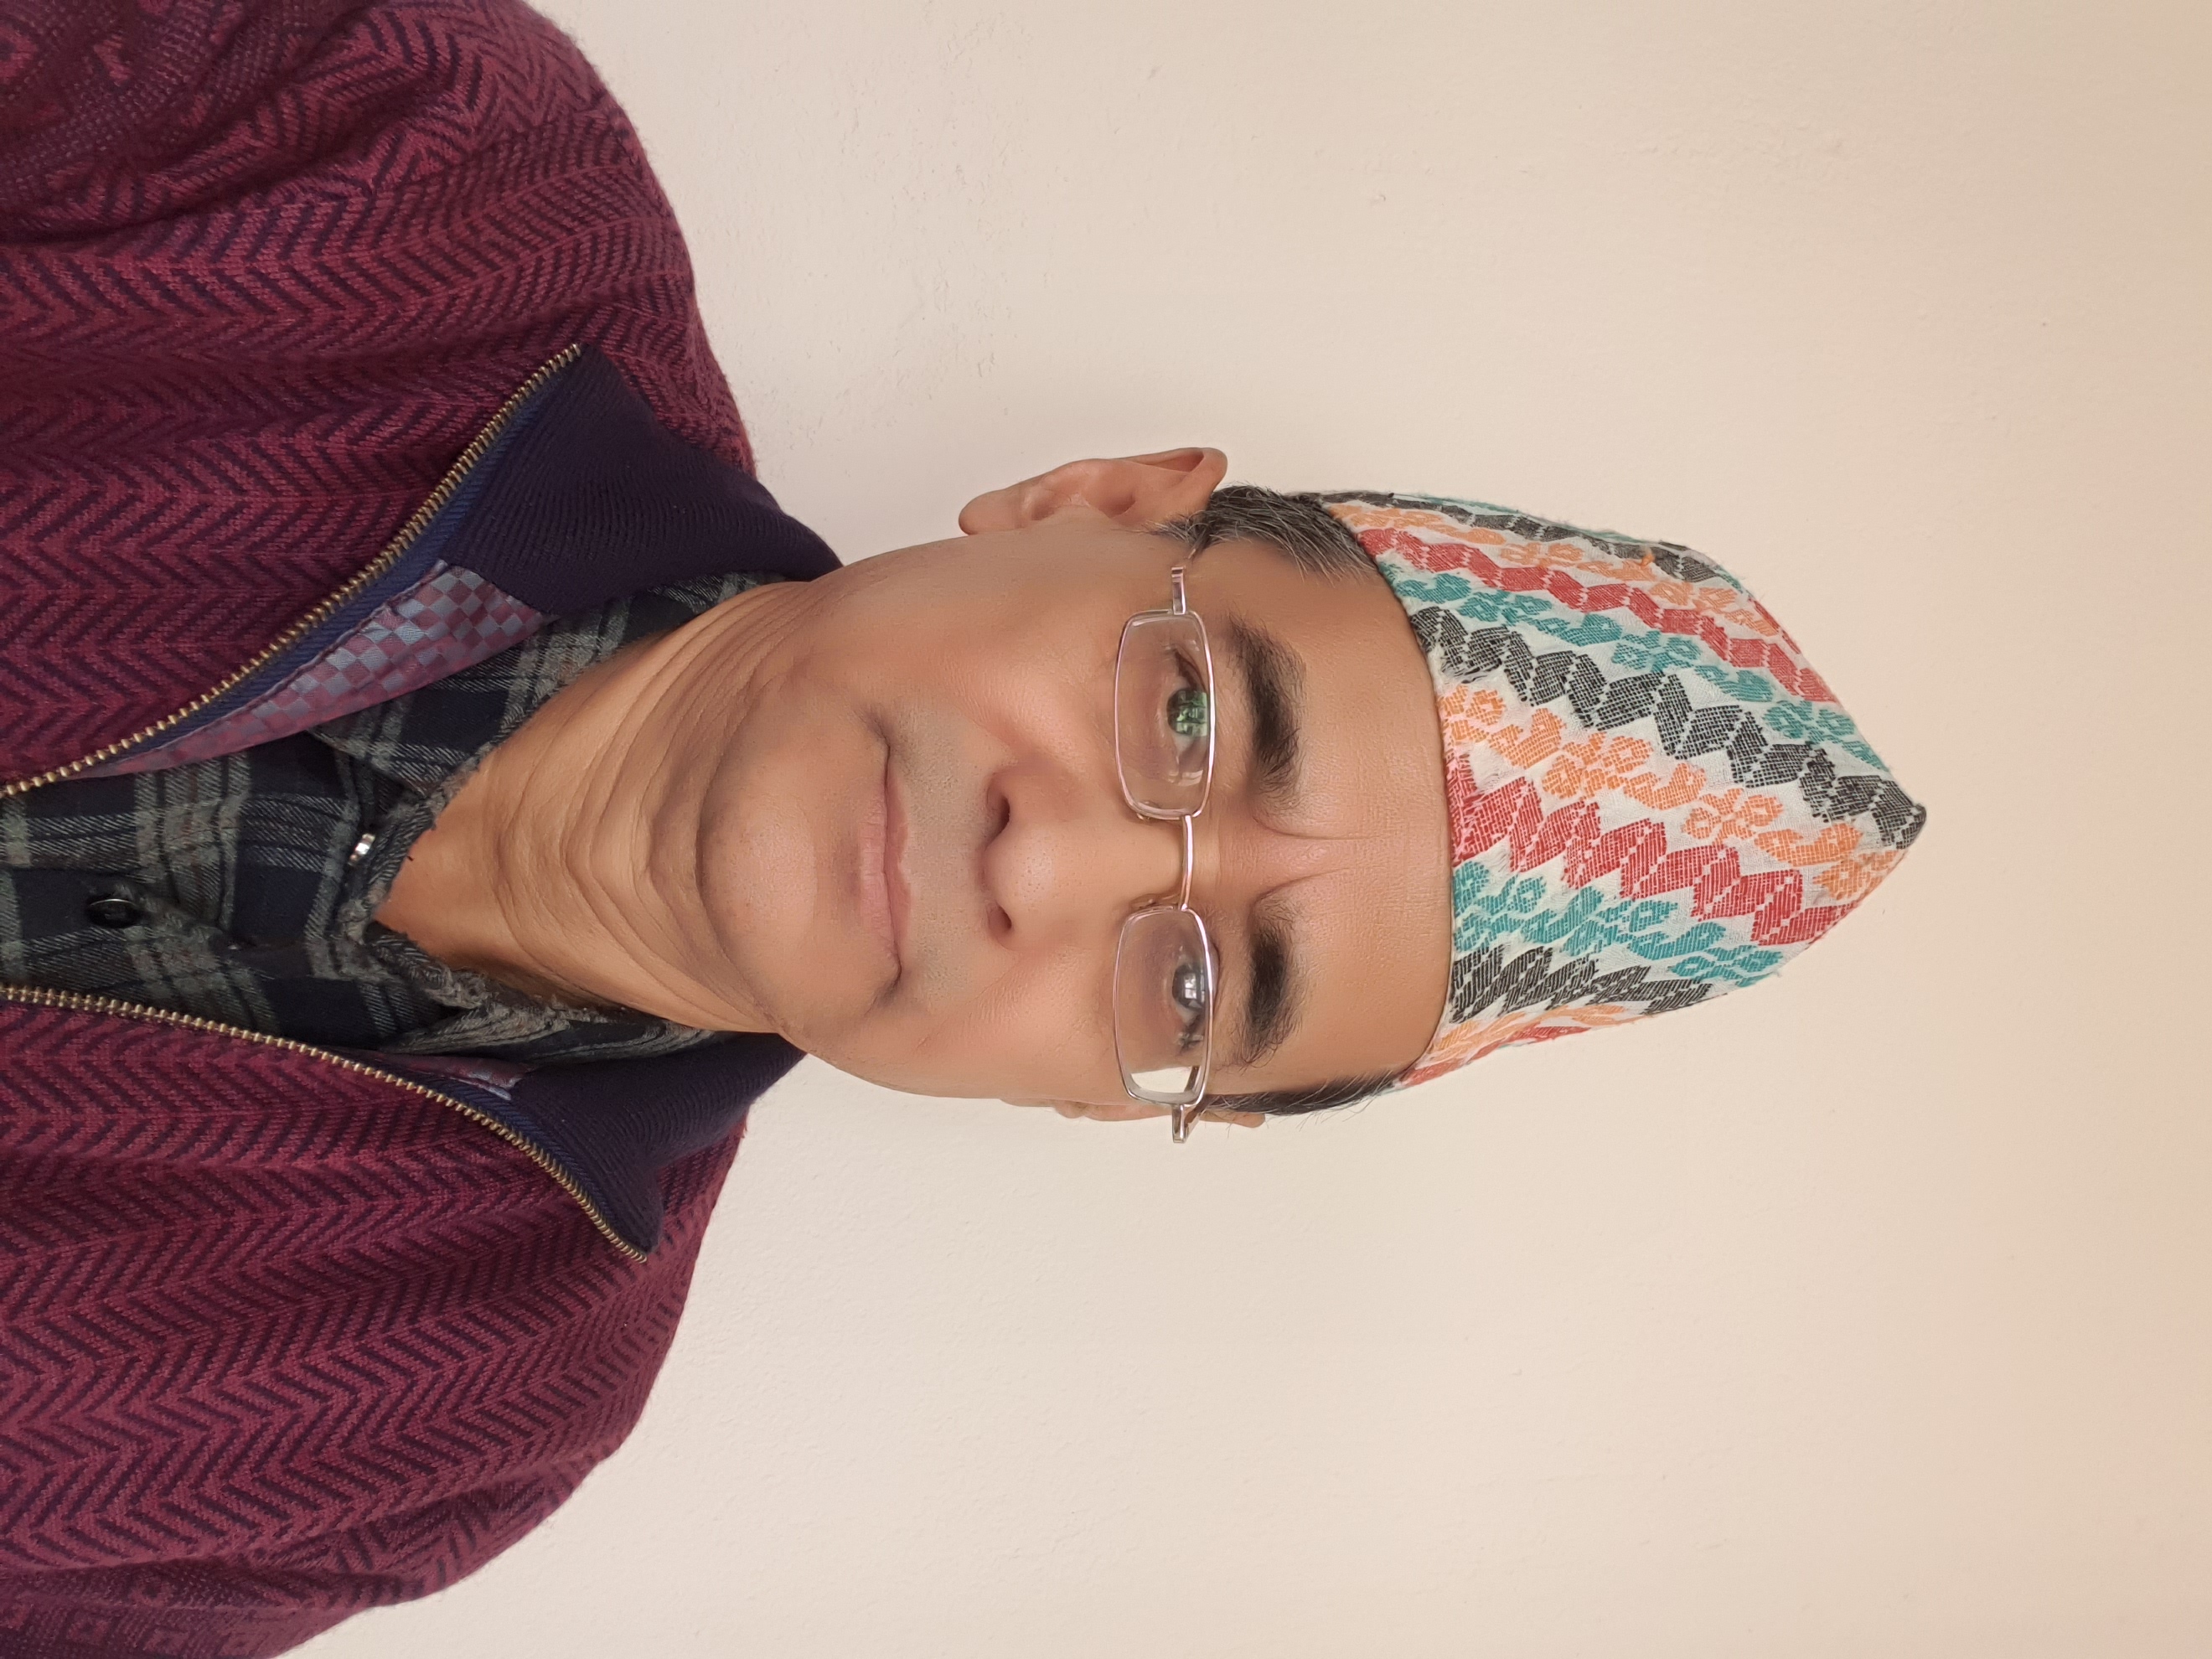 Damodar Bhakta Shrestha